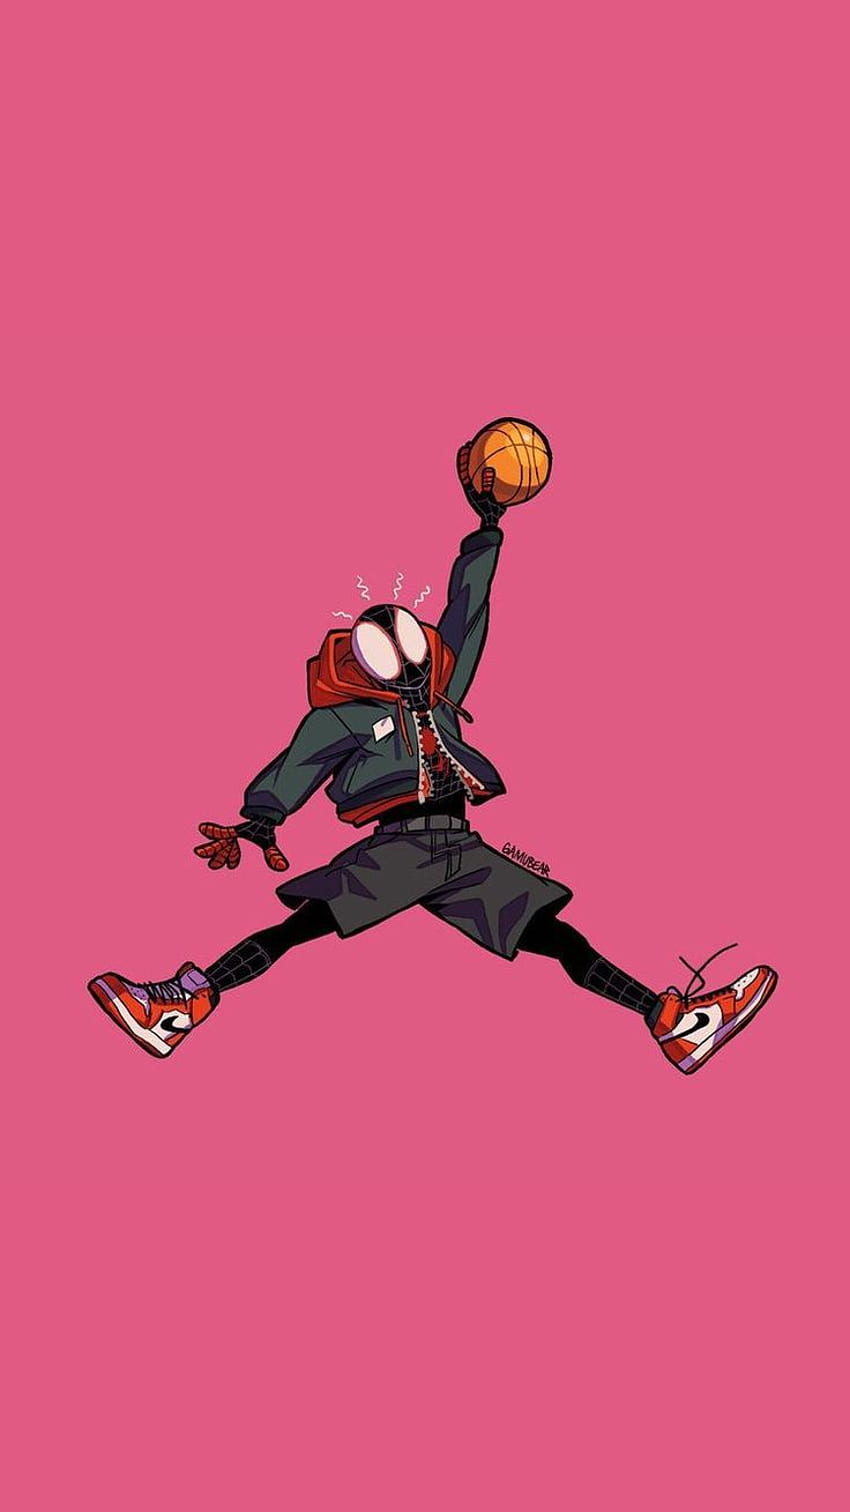 Spiderman basquete, bola, Esporte, Sipdey-sence, Jordan, Nba Papel de parede de celular HD